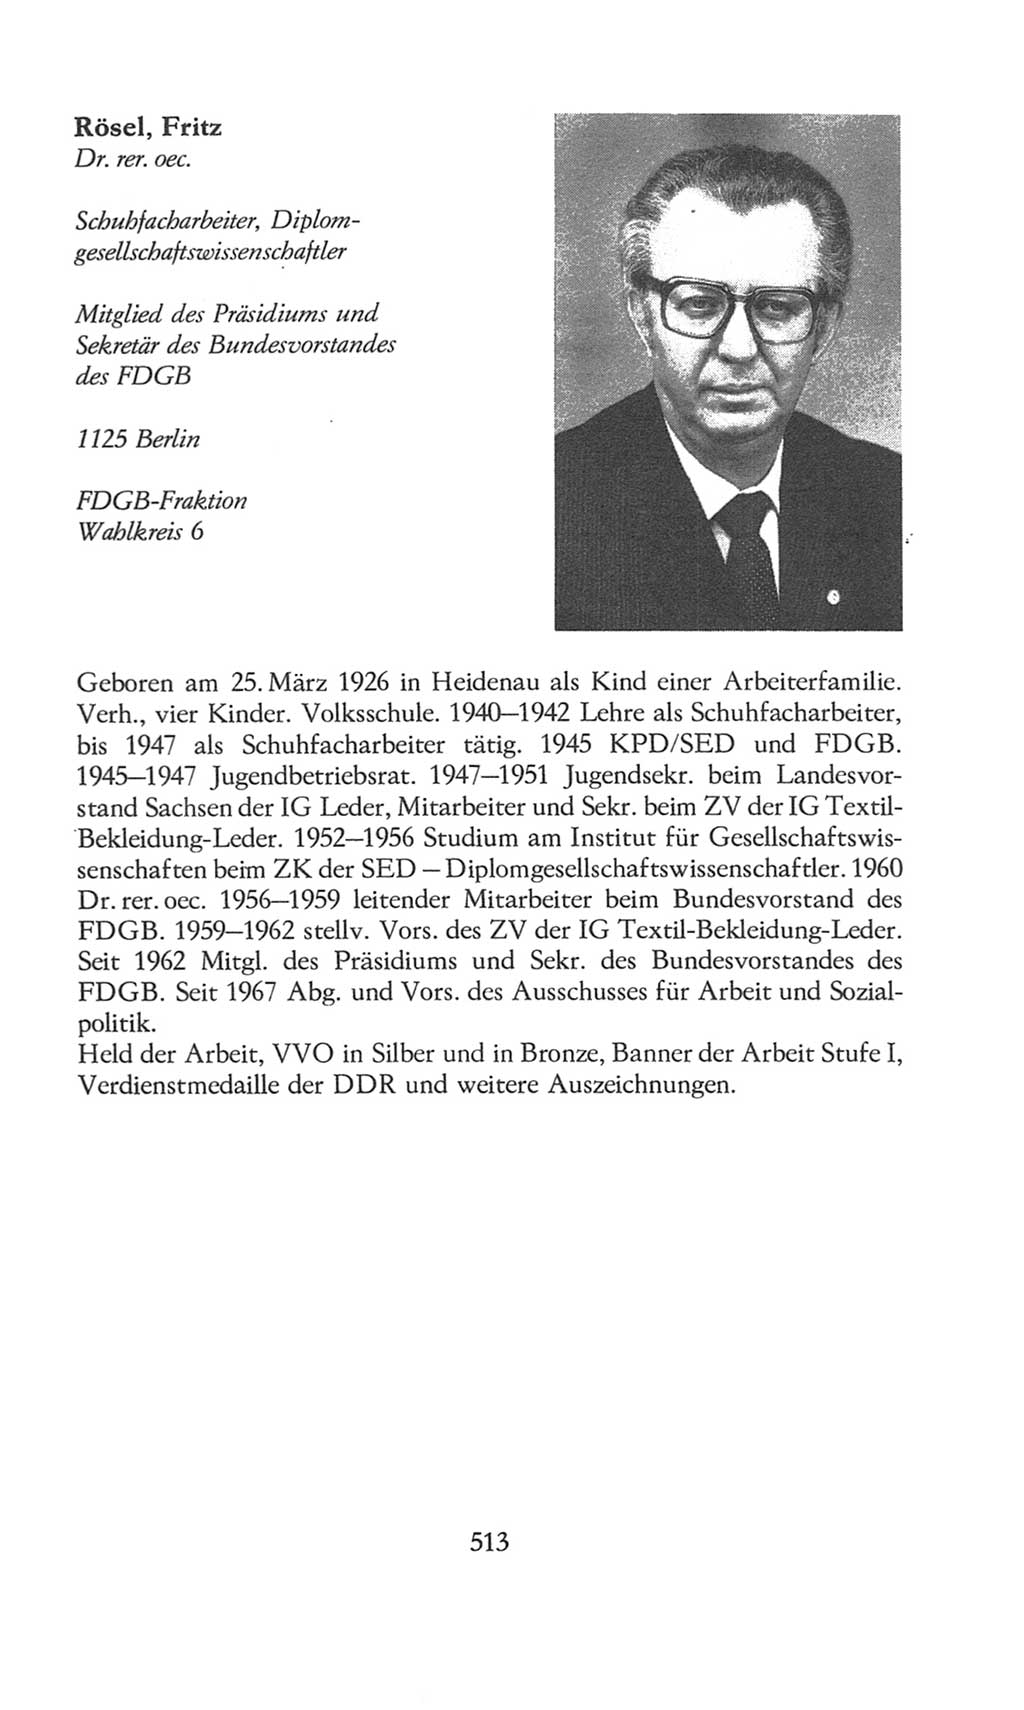 Volkskammer (VK) der Deutschen Demokratischen Republik (DDR), 8. Wahlperiode 1981-1986, Seite 513 (VK. DDR 8. WP. 1981-1986, S. 513)